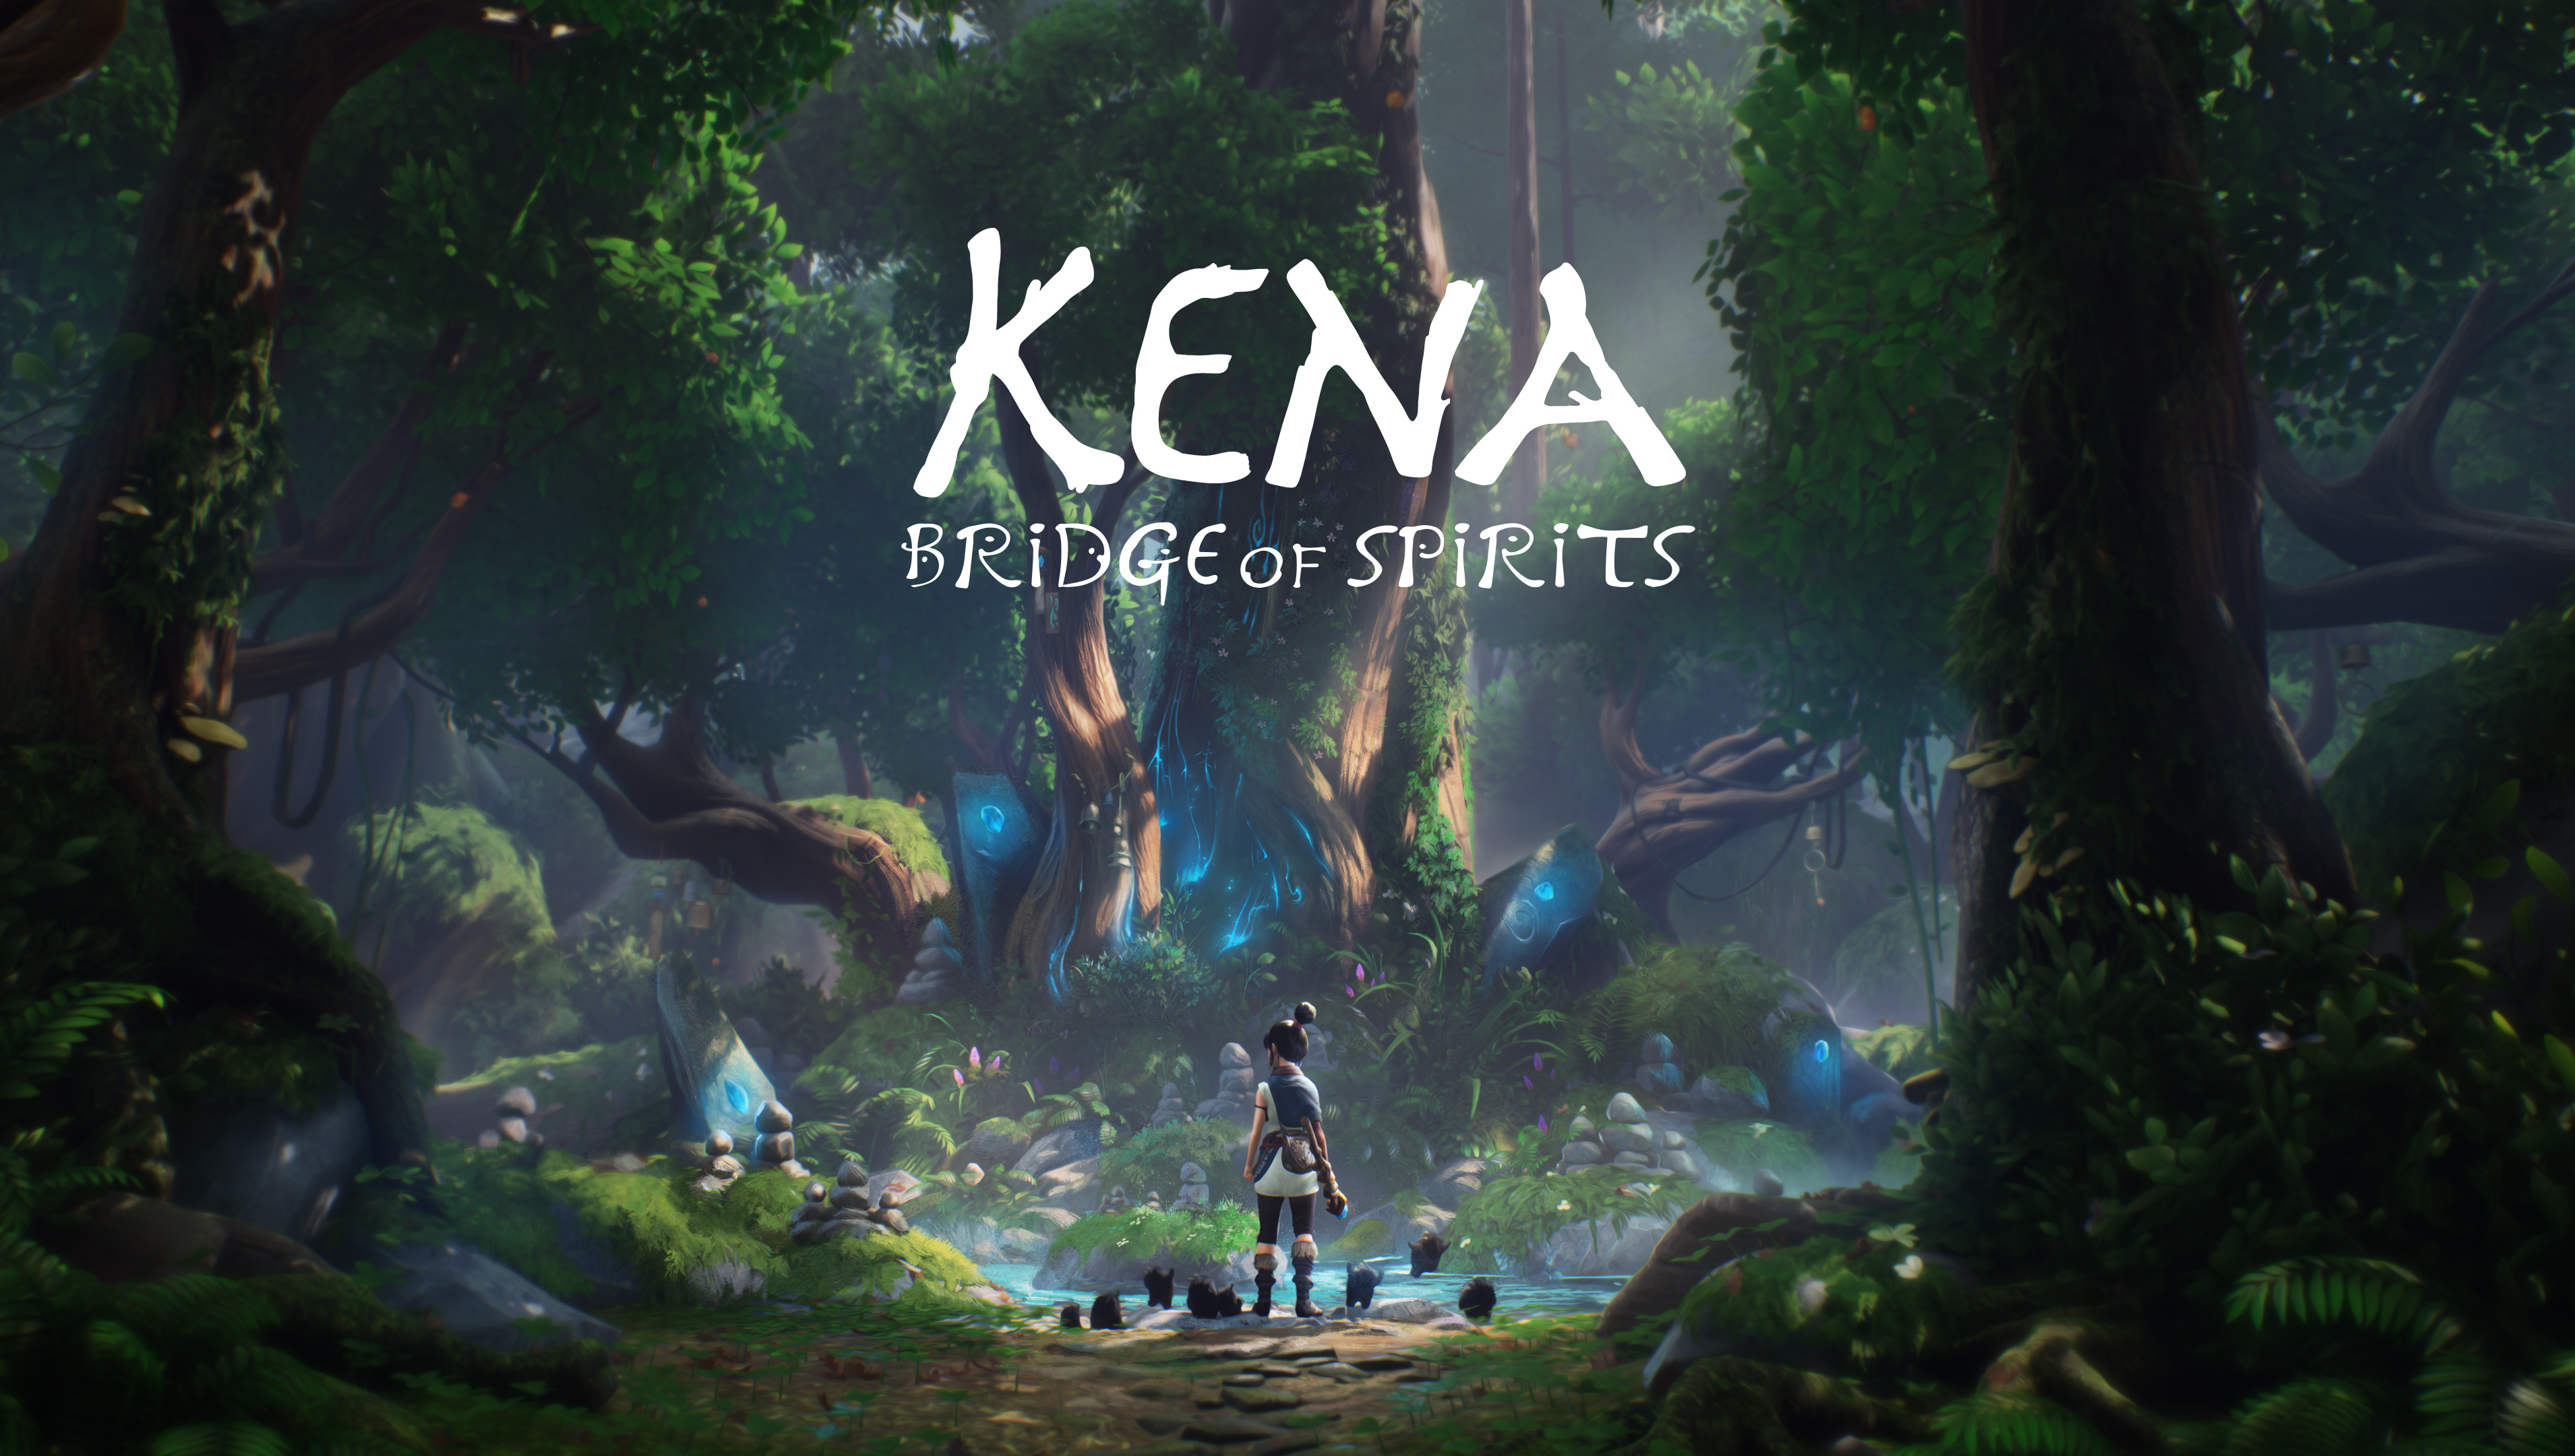 Video Game Kena: Bridge of Spirits HD Wallpaper | Background Image